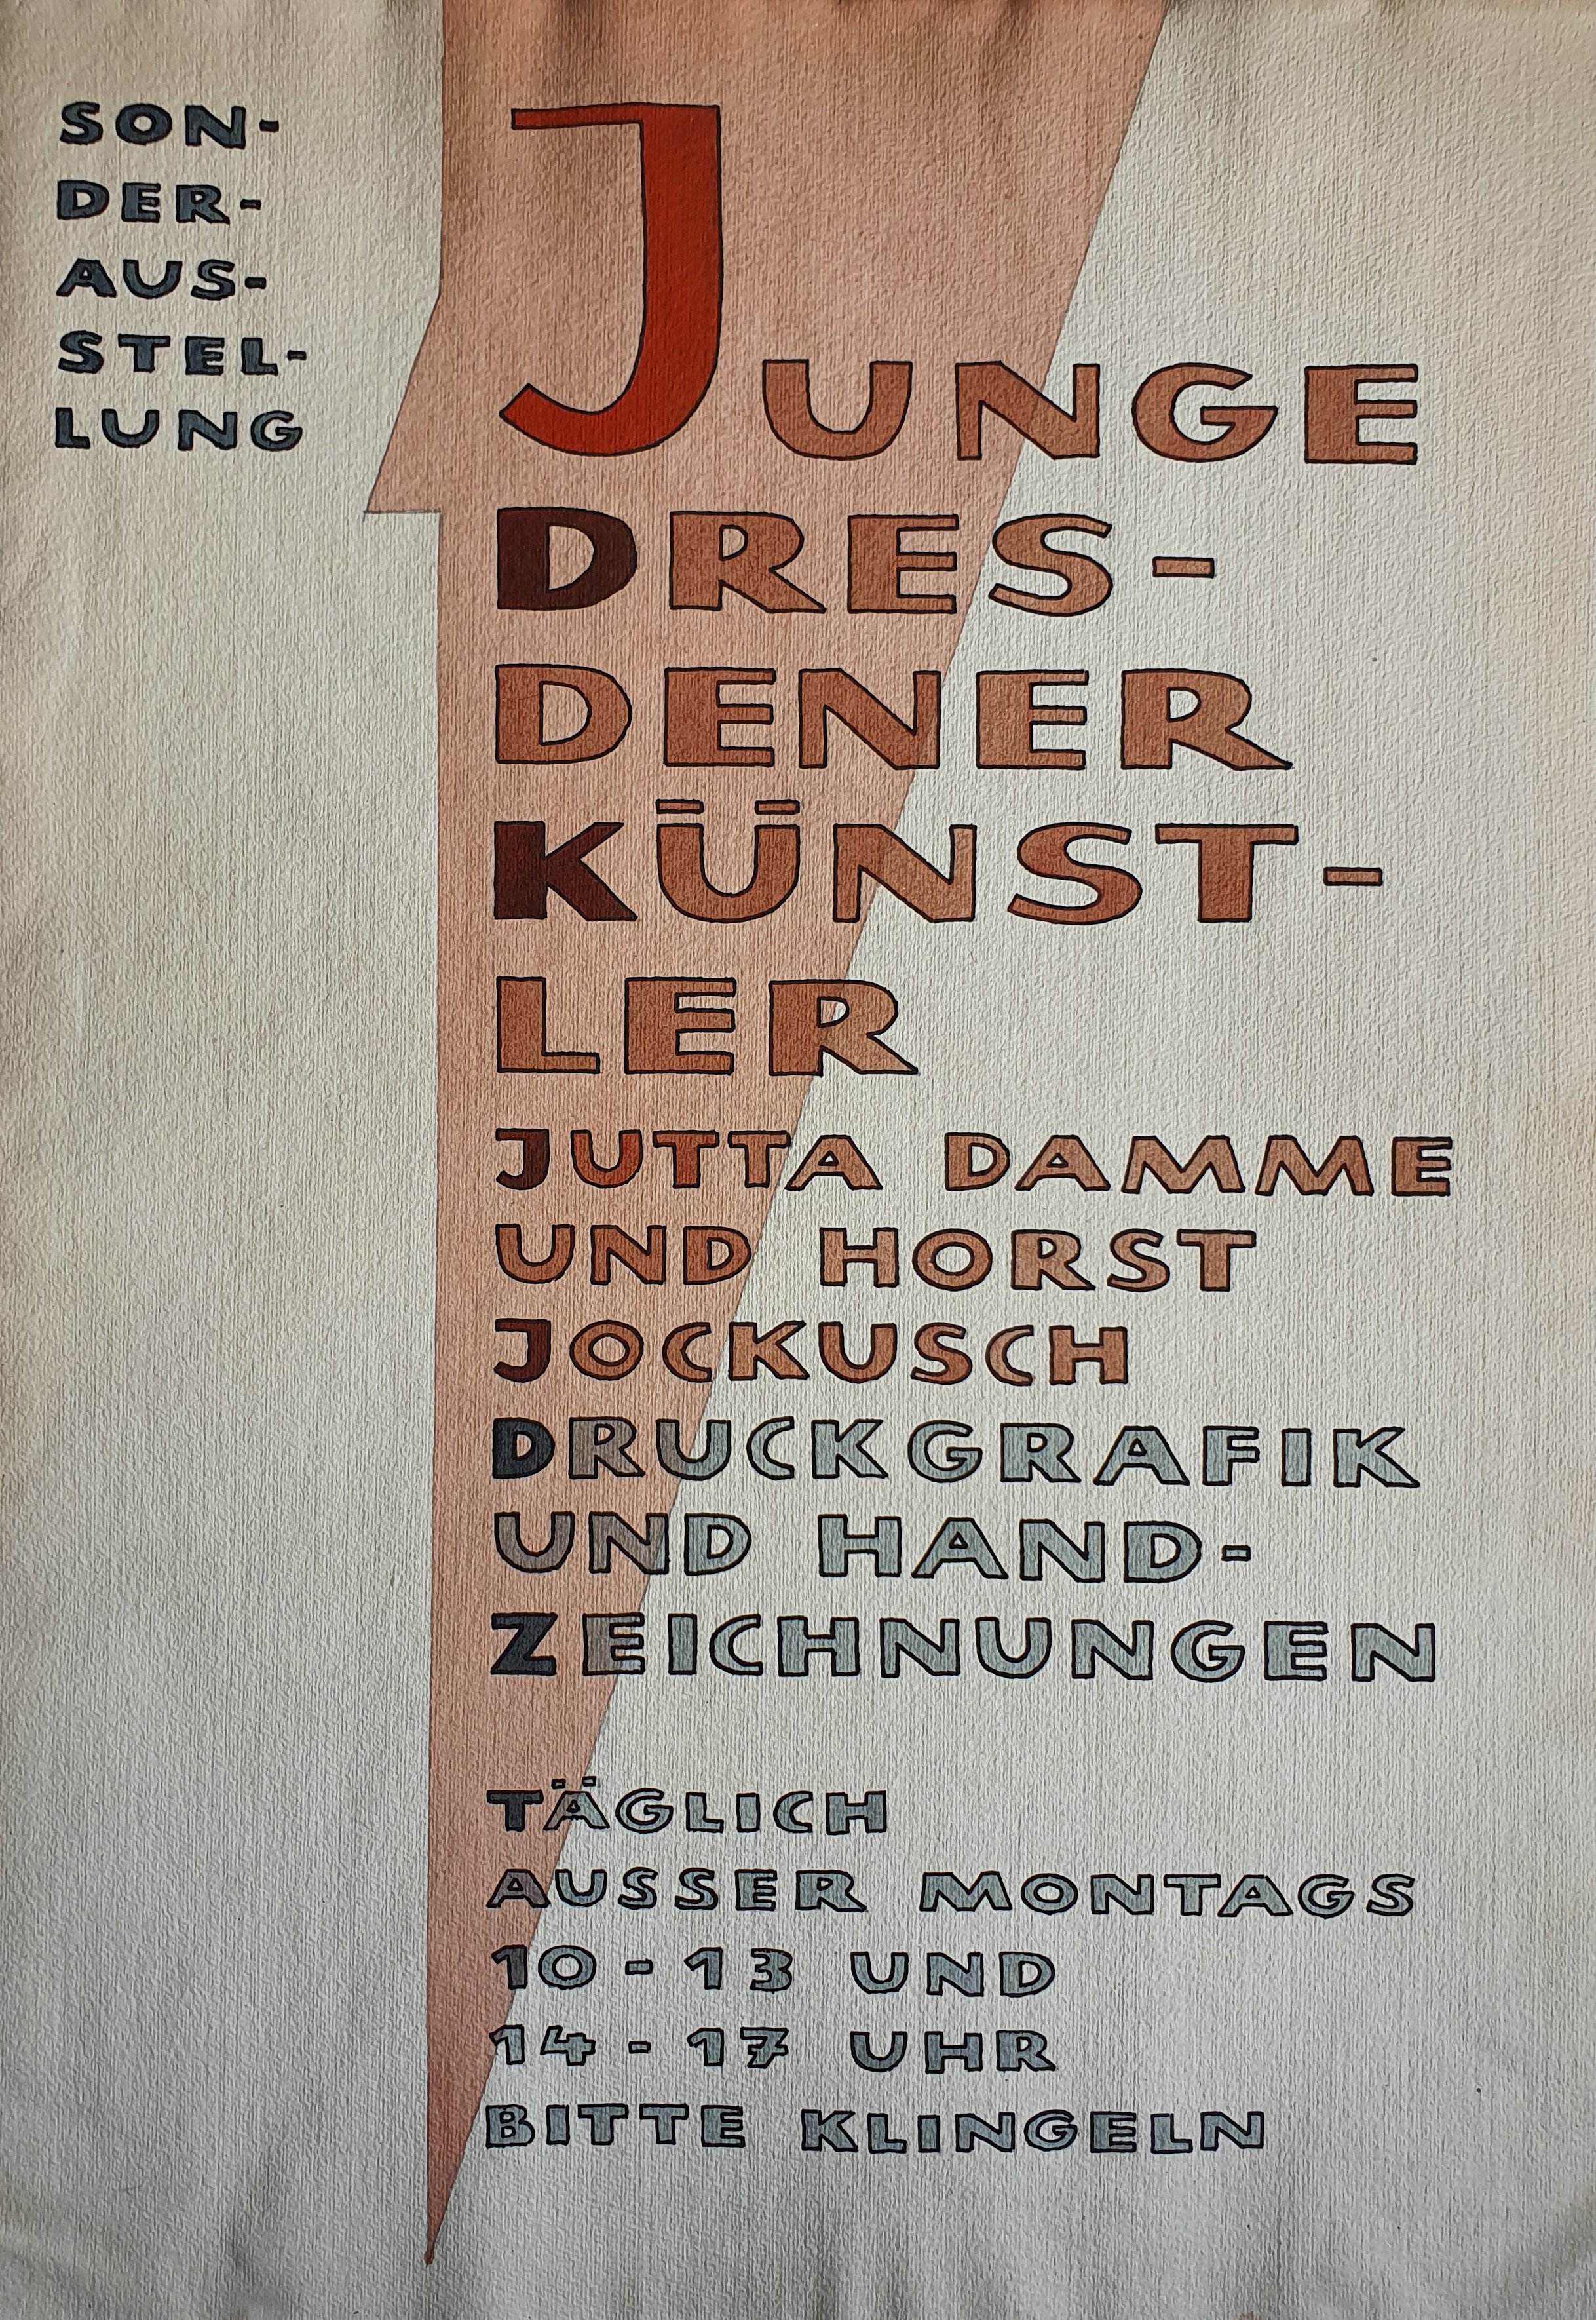 Sonderausstellung Junge Dresdener Künstler - Jutta Damme und Horst Jockusch - Druckgrafik und Handzeichnungen (Museum Schloss Bernburg CC BY-NC-SA)